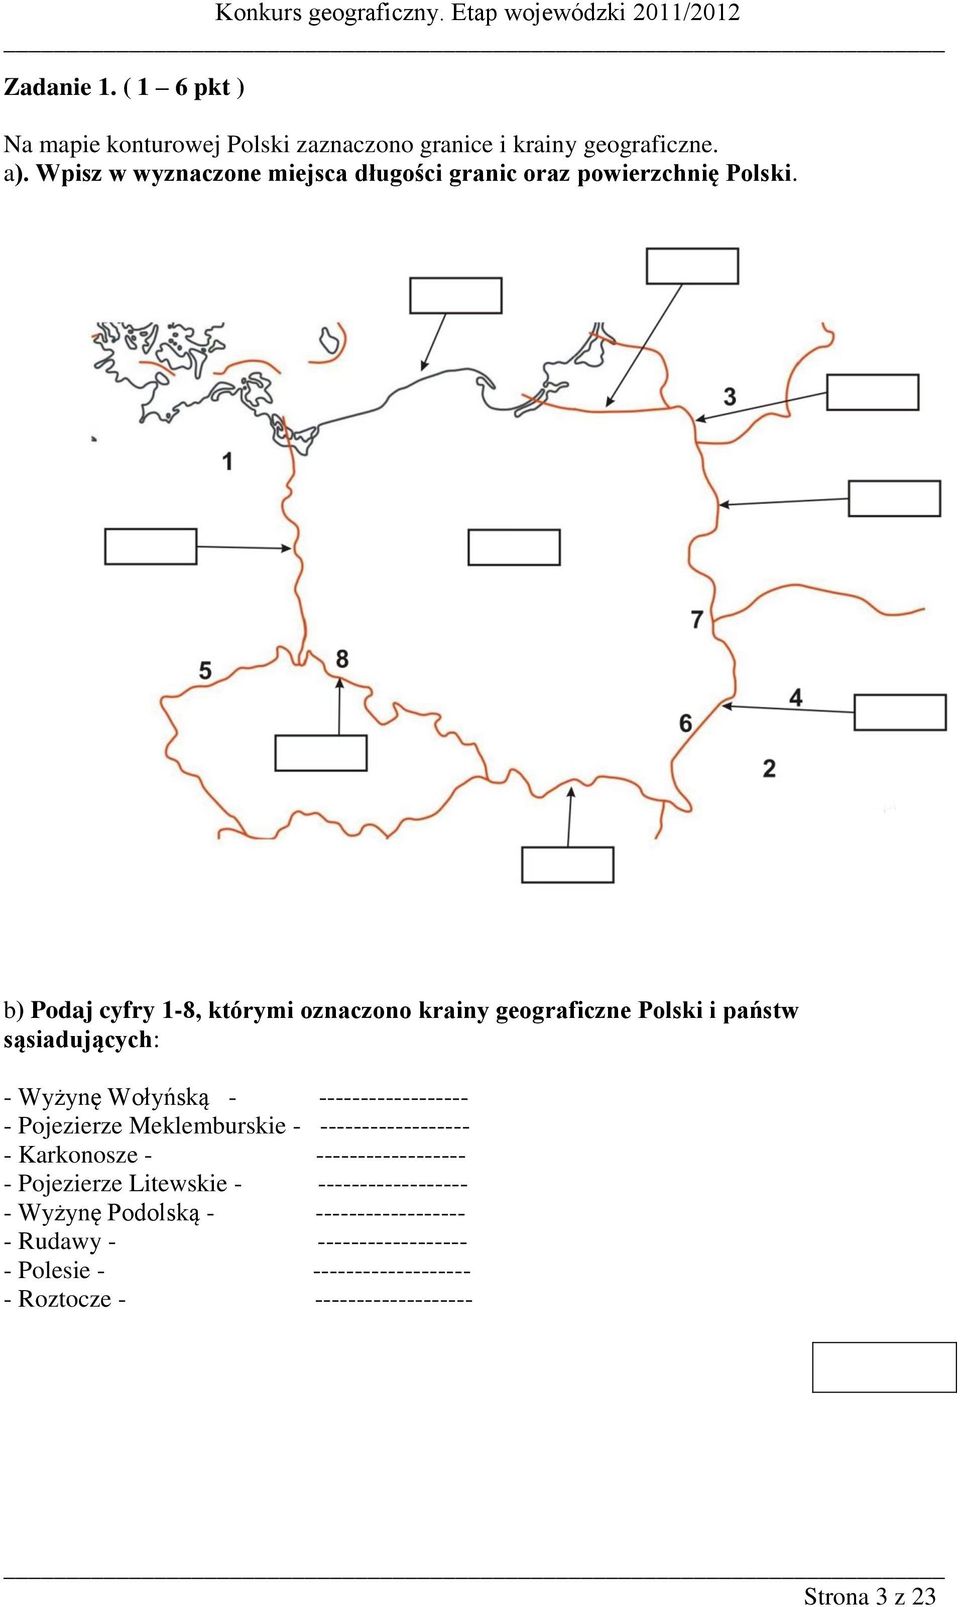 b) Podaj cyfry 1-8, którymi oznaczono krainy geograficzne Polski i państw sąsiadujących: - Wyżynę Wołyńską - ------------------ - Pojezierze